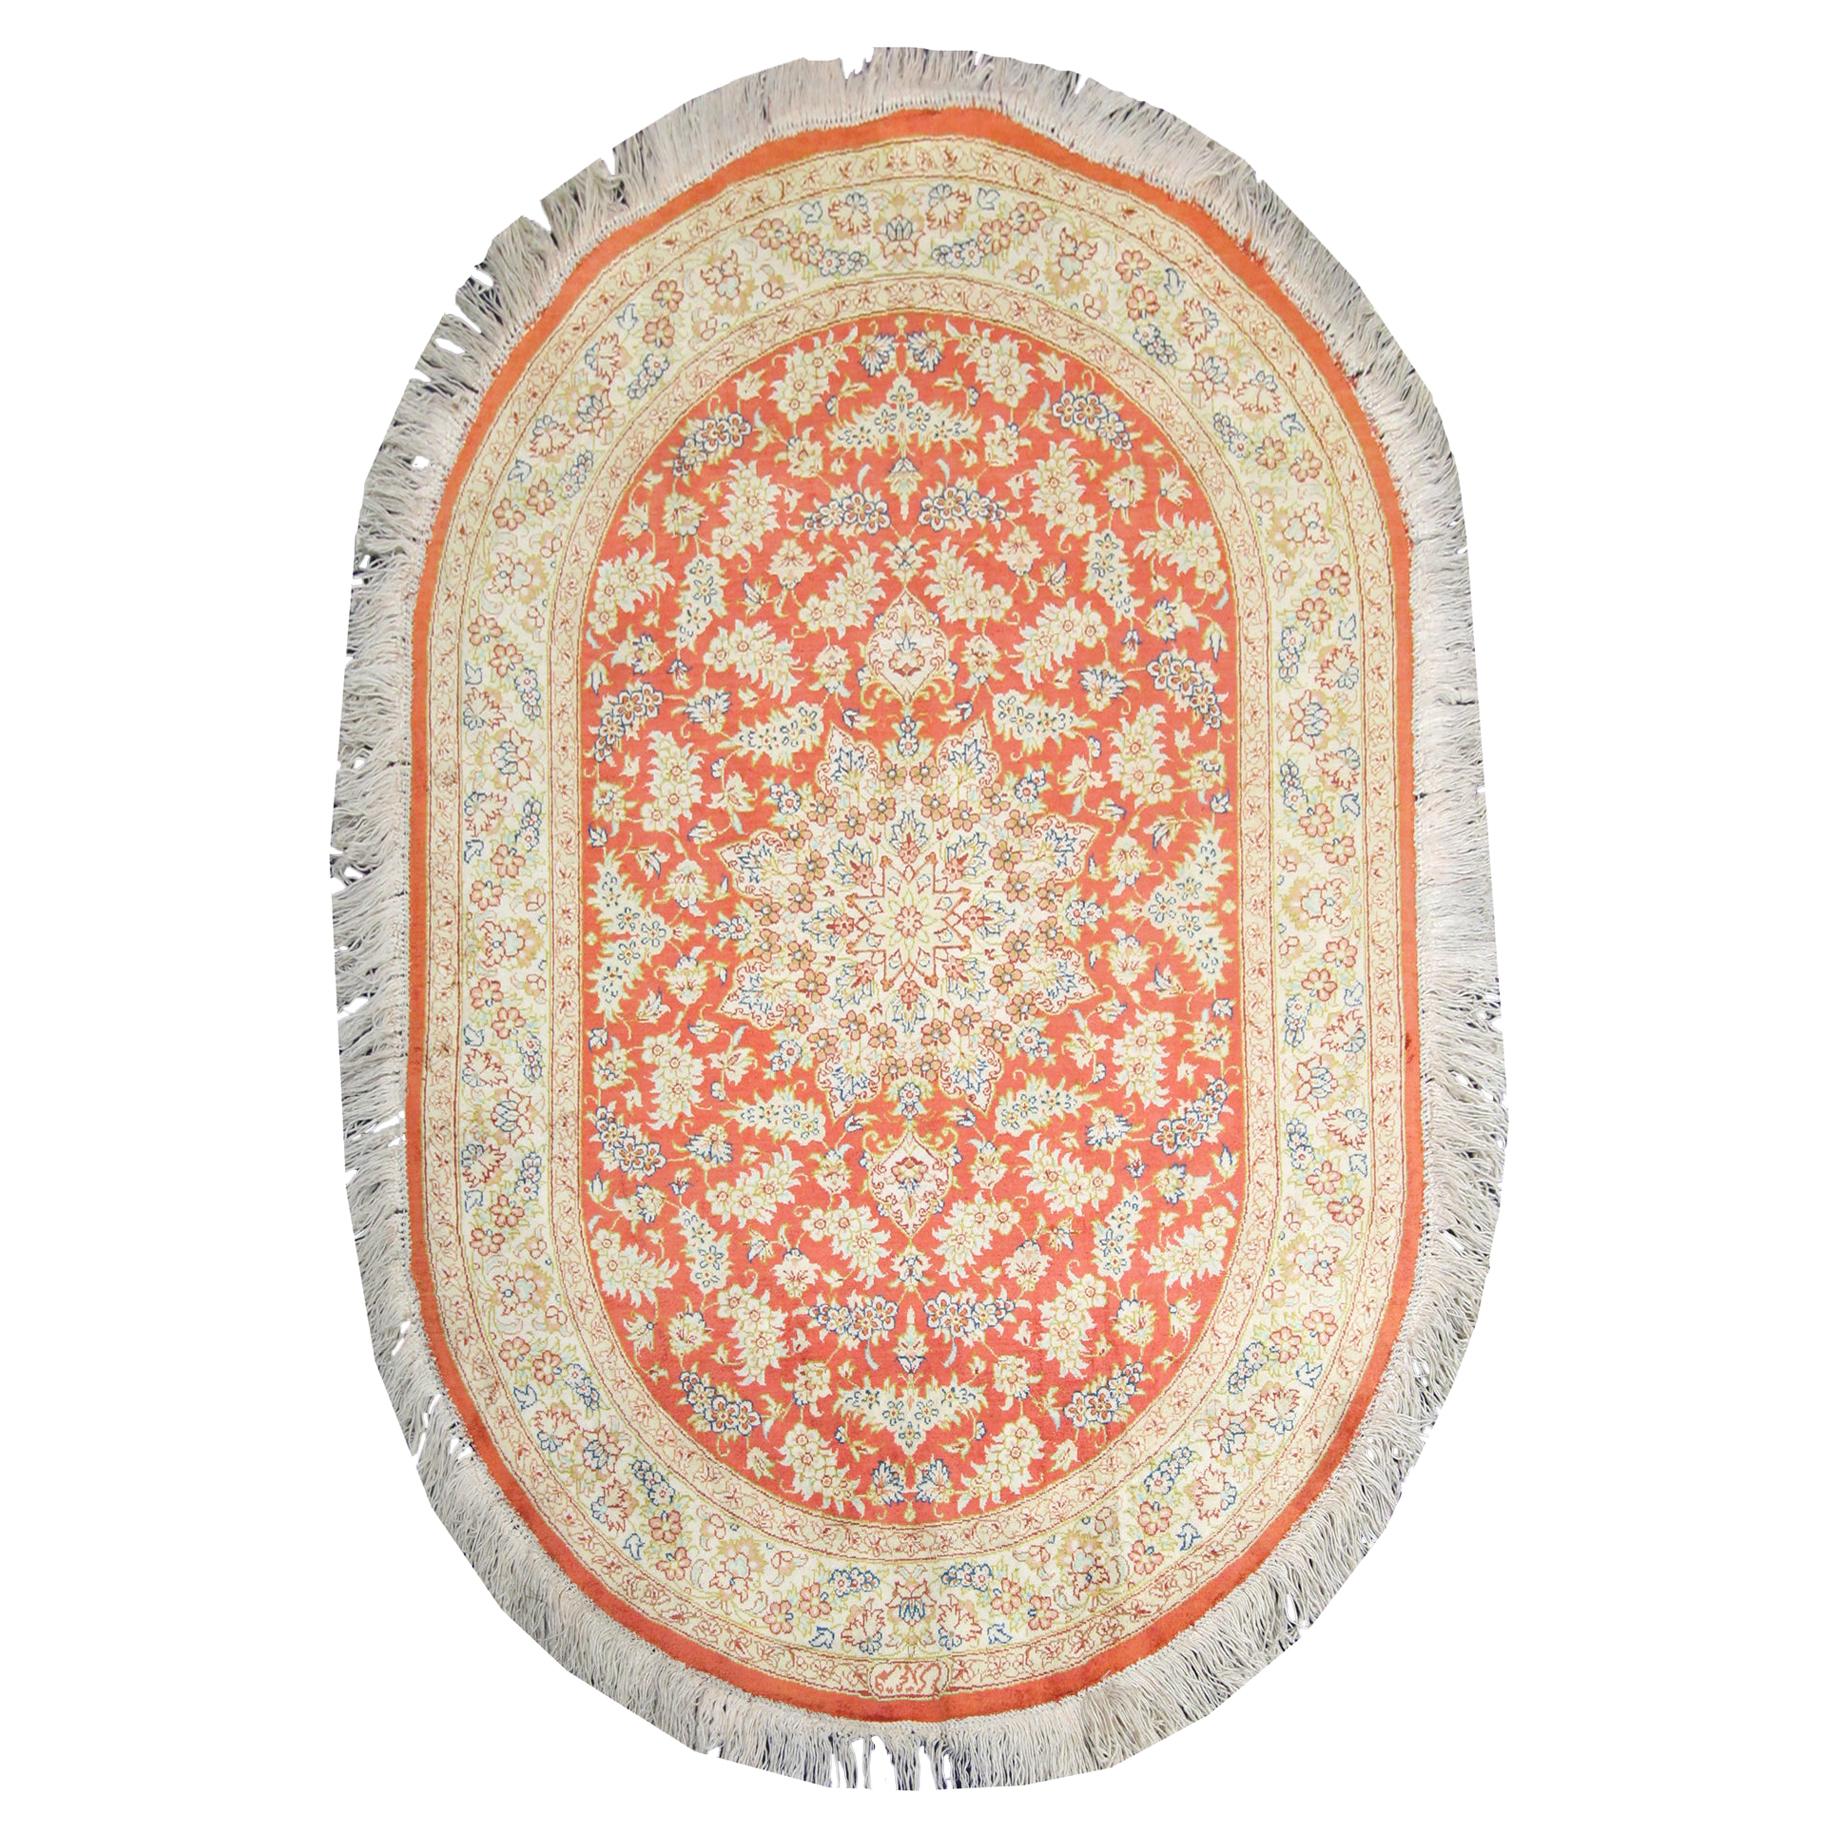 Ovaler handgefertigter türkischer Teppich aus reiner Seide, orientalischer roter Wollteppich